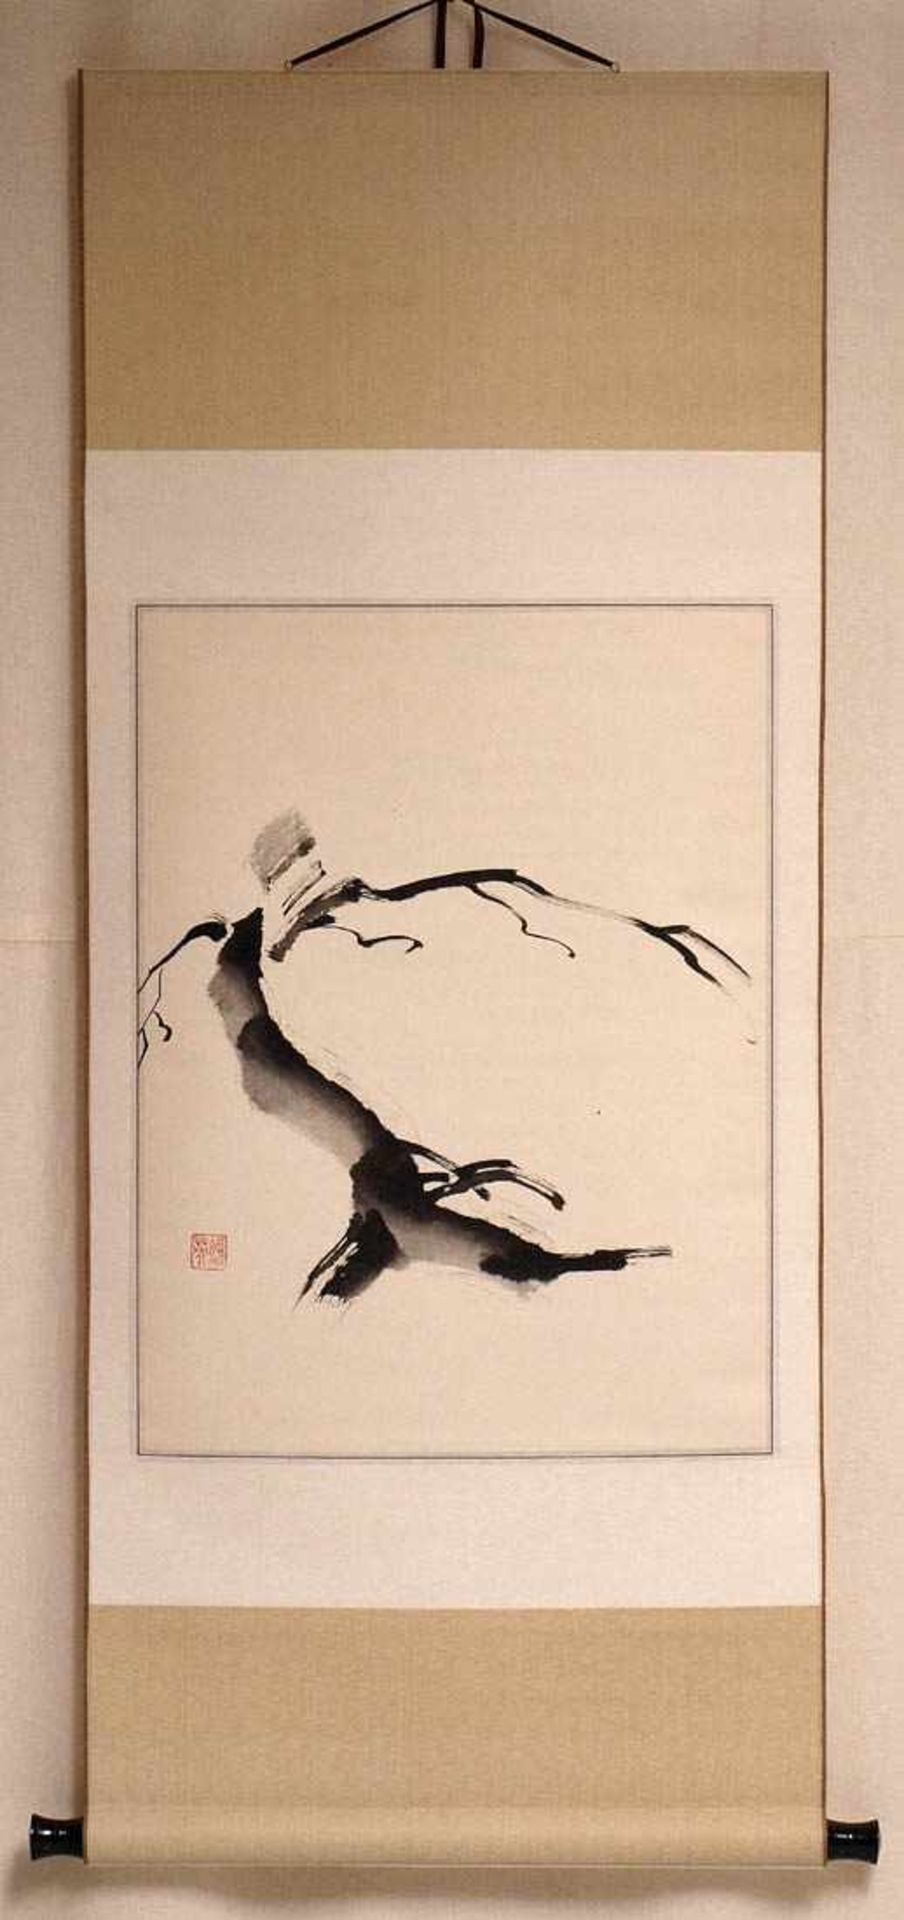 Tuschezeichnung, China, 20.Jhdt. Toter Baum. Tuschezeichnung auf Papier, mit Stempelsignatur und - Bild 2 aus 2